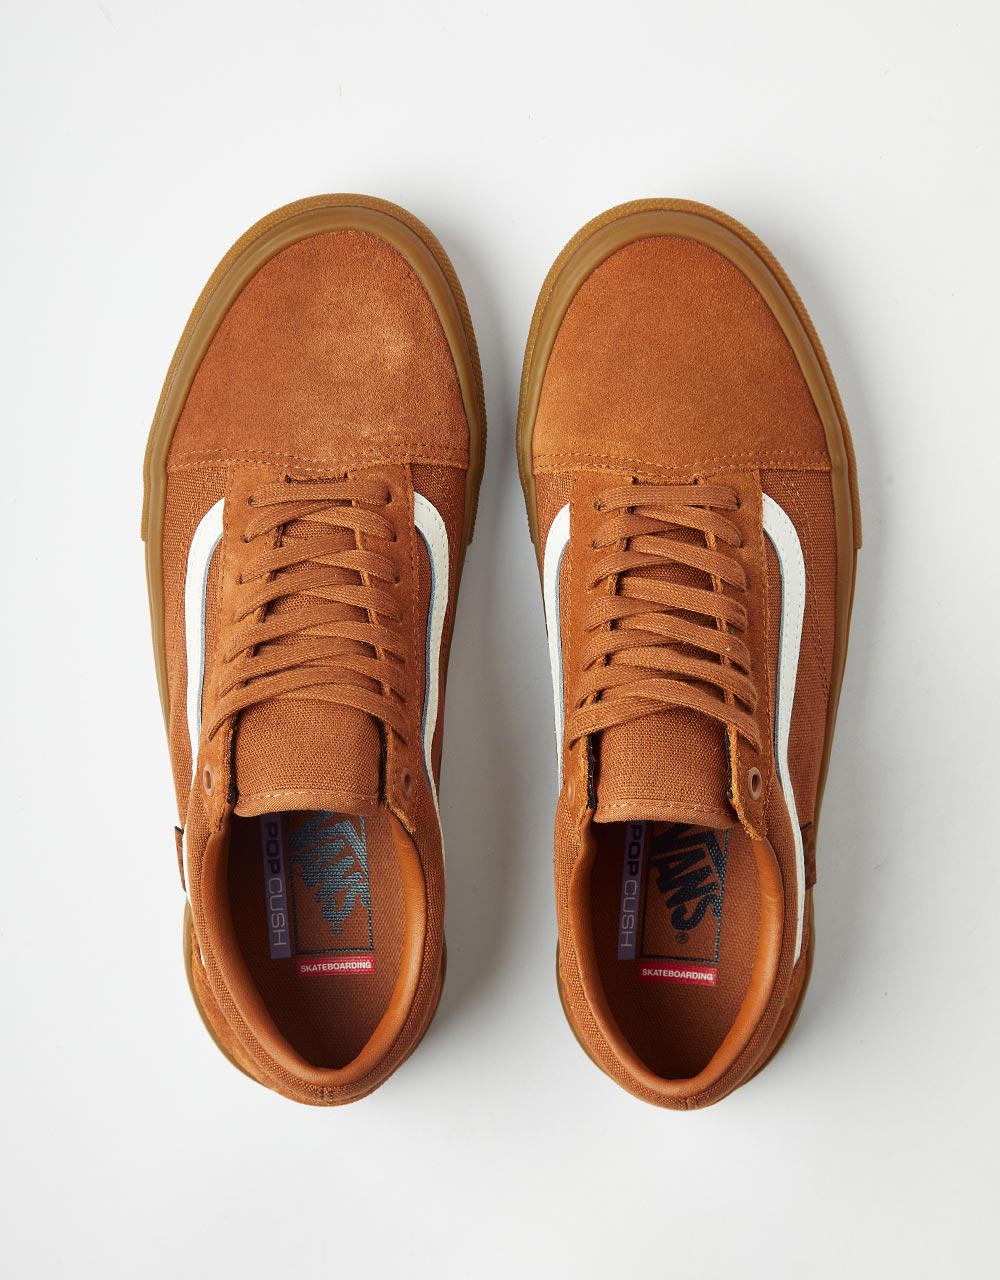 Vans Old Skool Skate Shoes - Brown/Gum